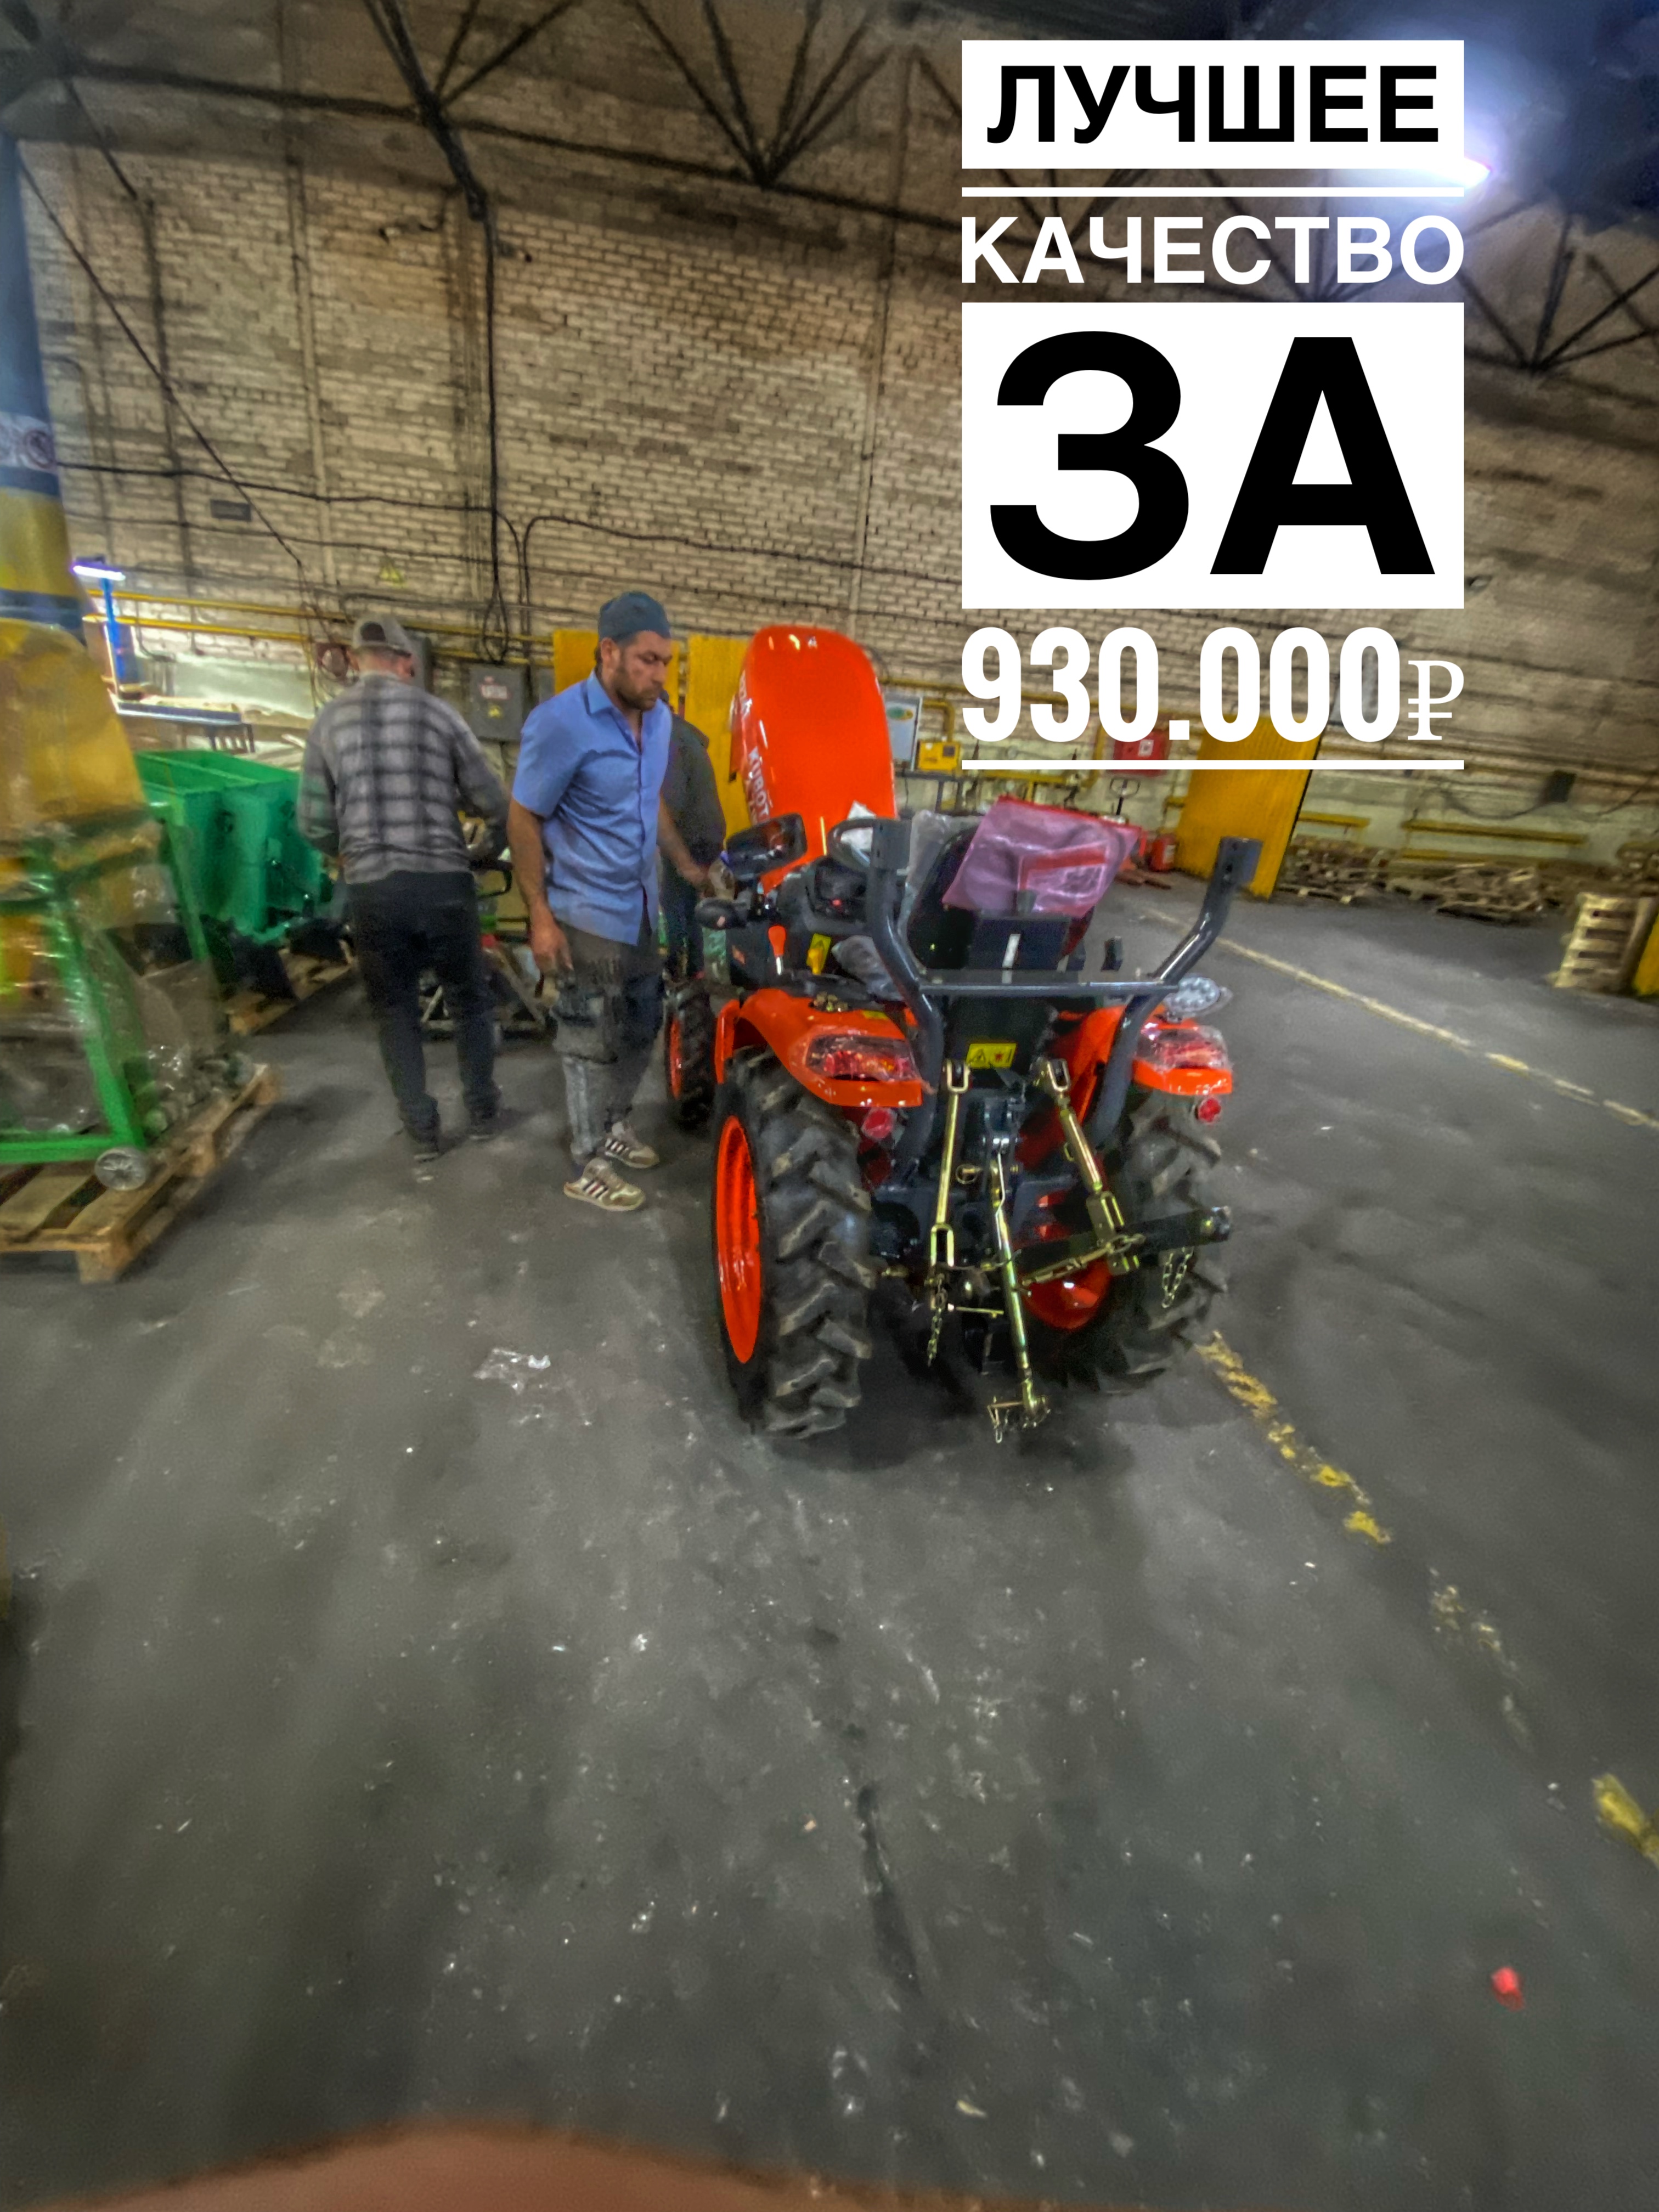 Купить лучший трактор пишите или звоните 7-925-081-03-33 #минитрактор #трактор  #tractor  #кубота